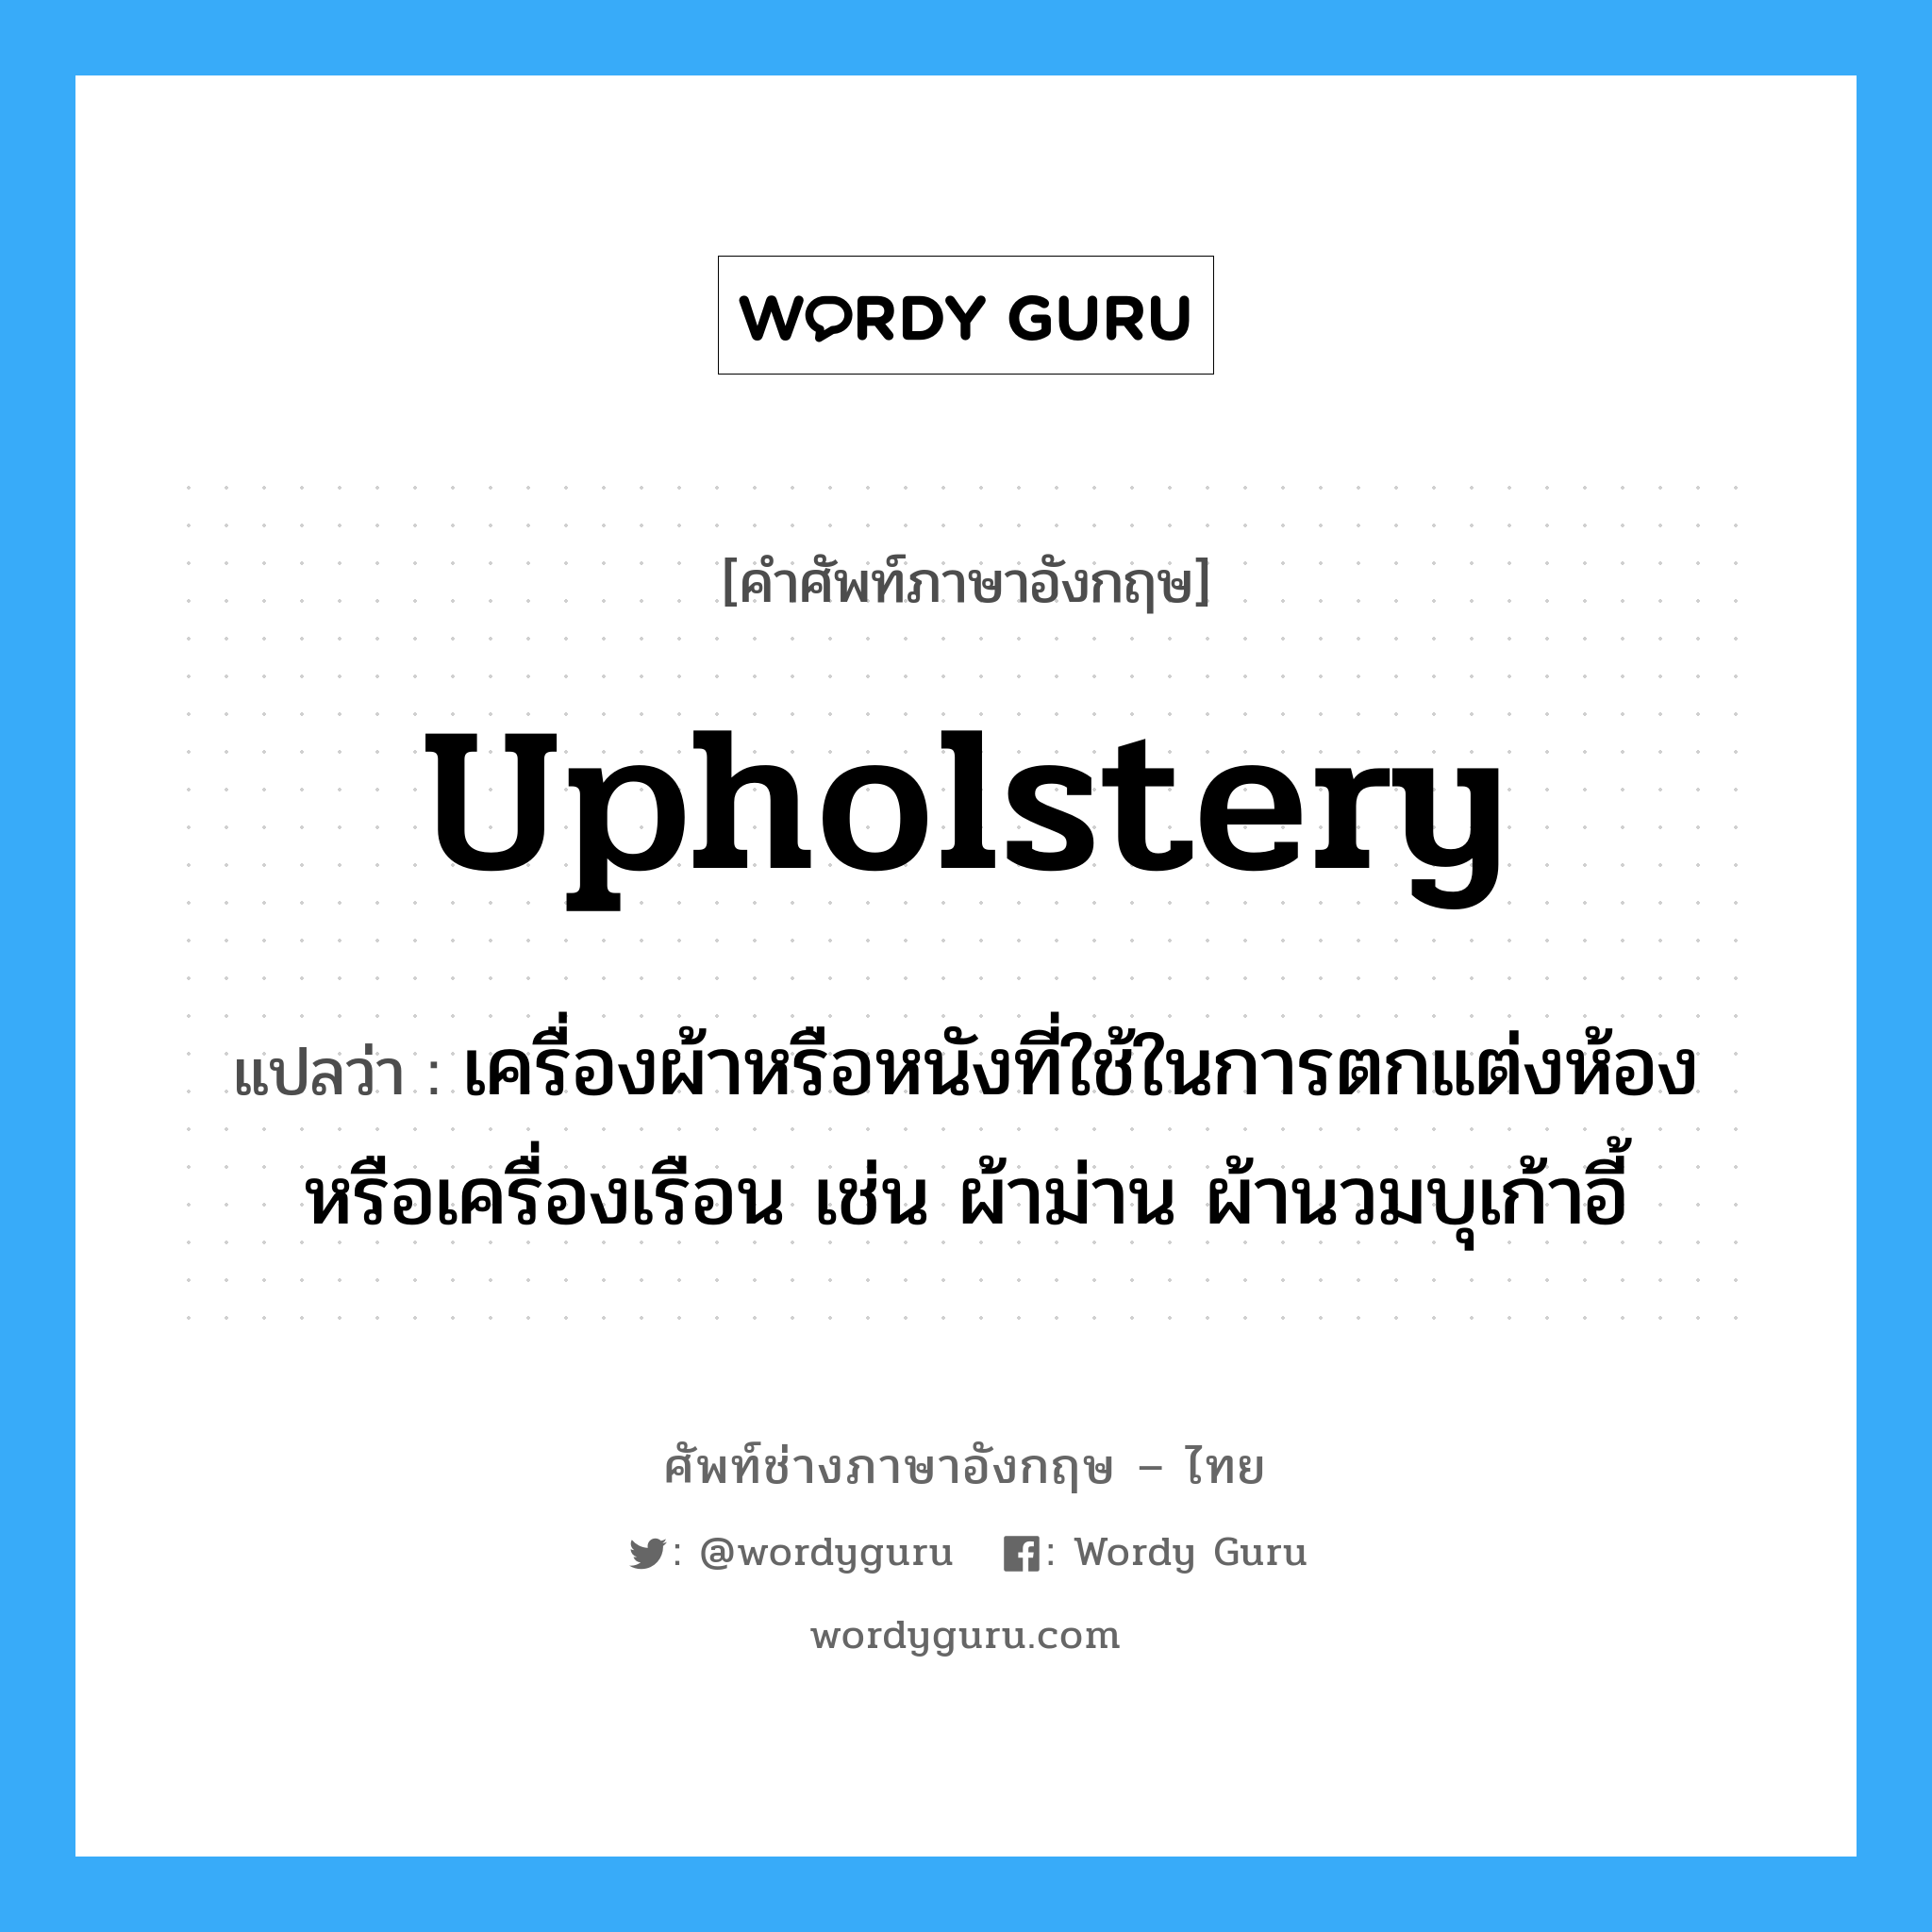 upholstery แปลว่า?, คำศัพท์ช่างภาษาอังกฤษ - ไทย upholstery คำศัพท์ภาษาอังกฤษ upholstery แปลว่า เครื่องผ้าหรือหนังที่ใช้ในการตกแต่งห้องหรือเครื่องเรือน เช่น ผ้าม่าน ผ้านวมบุเก้าอี้